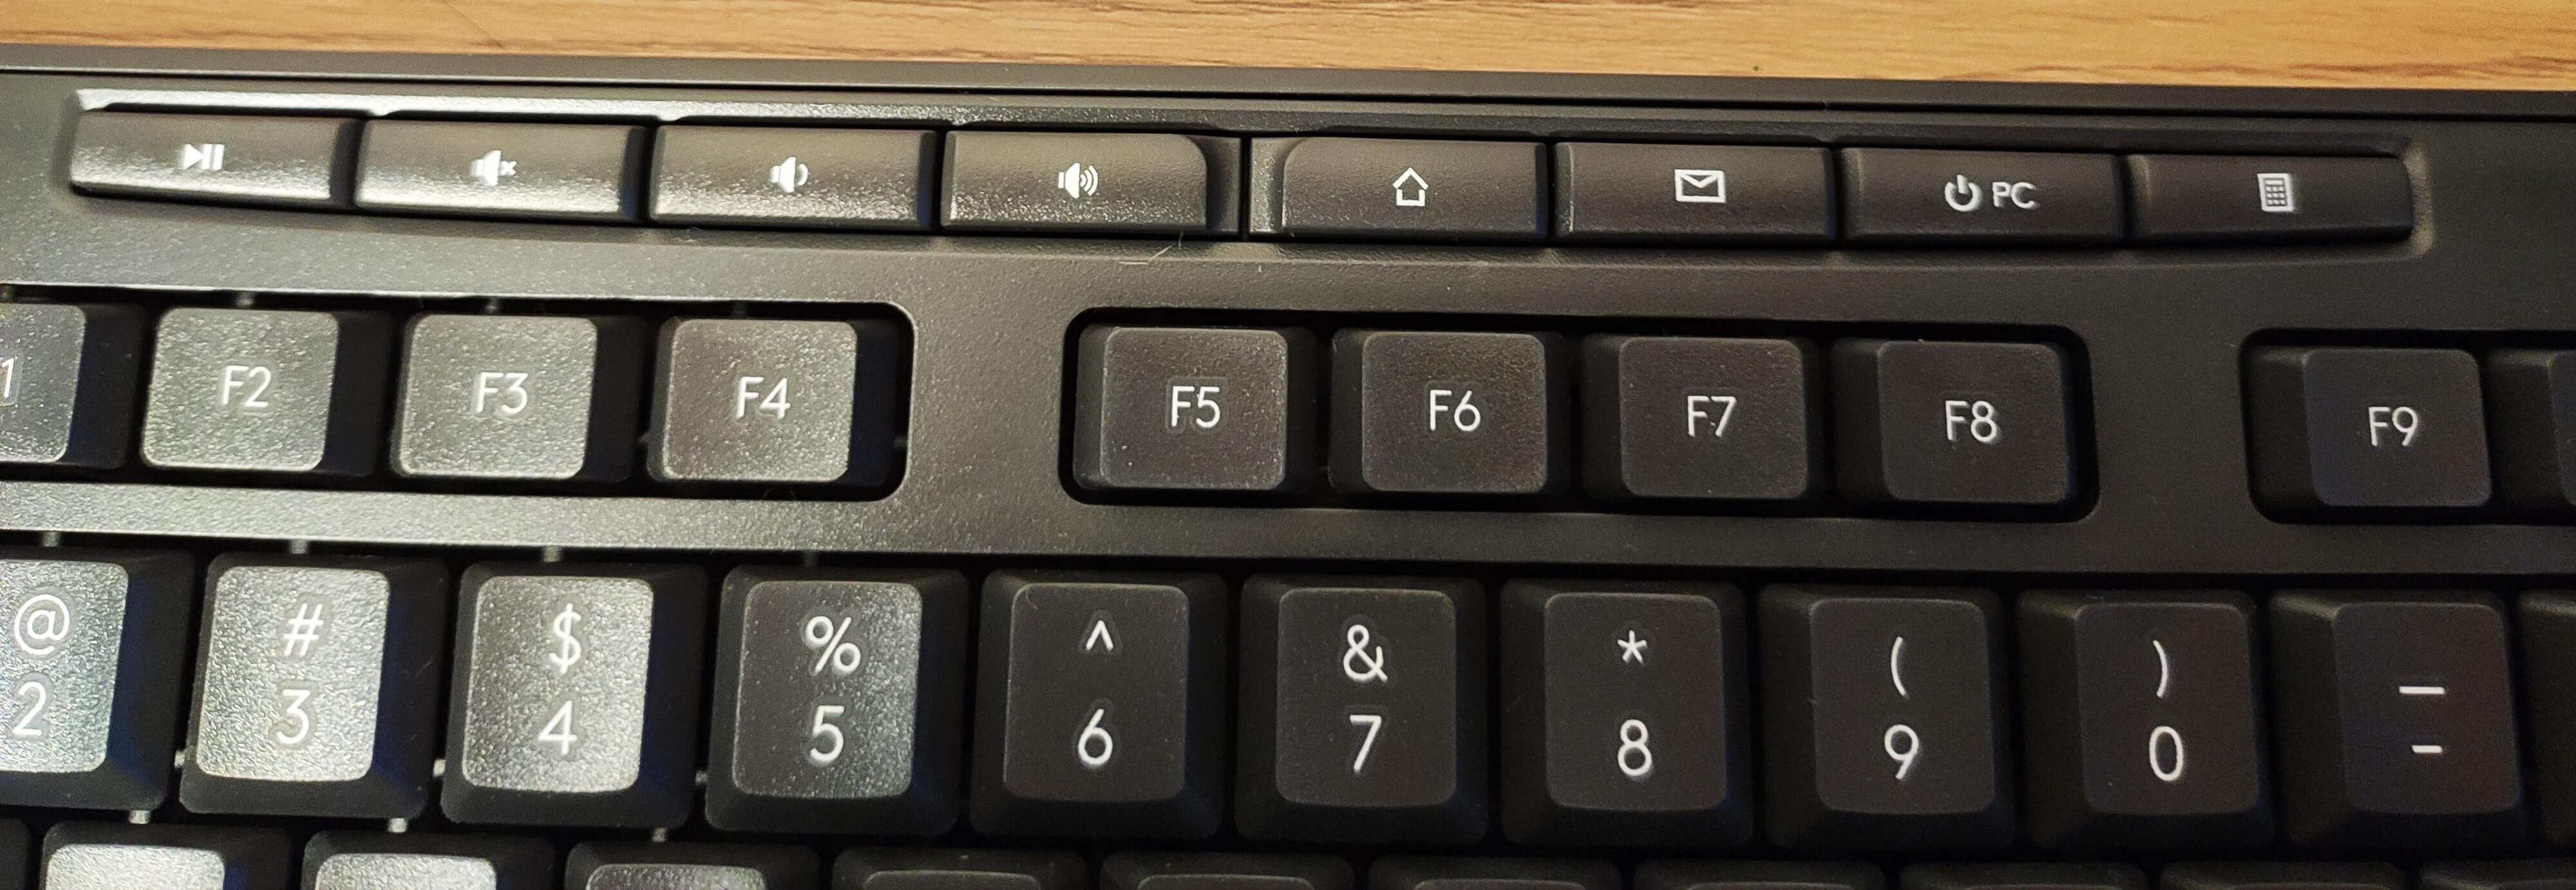 klawiatura przyciski funkcyjne